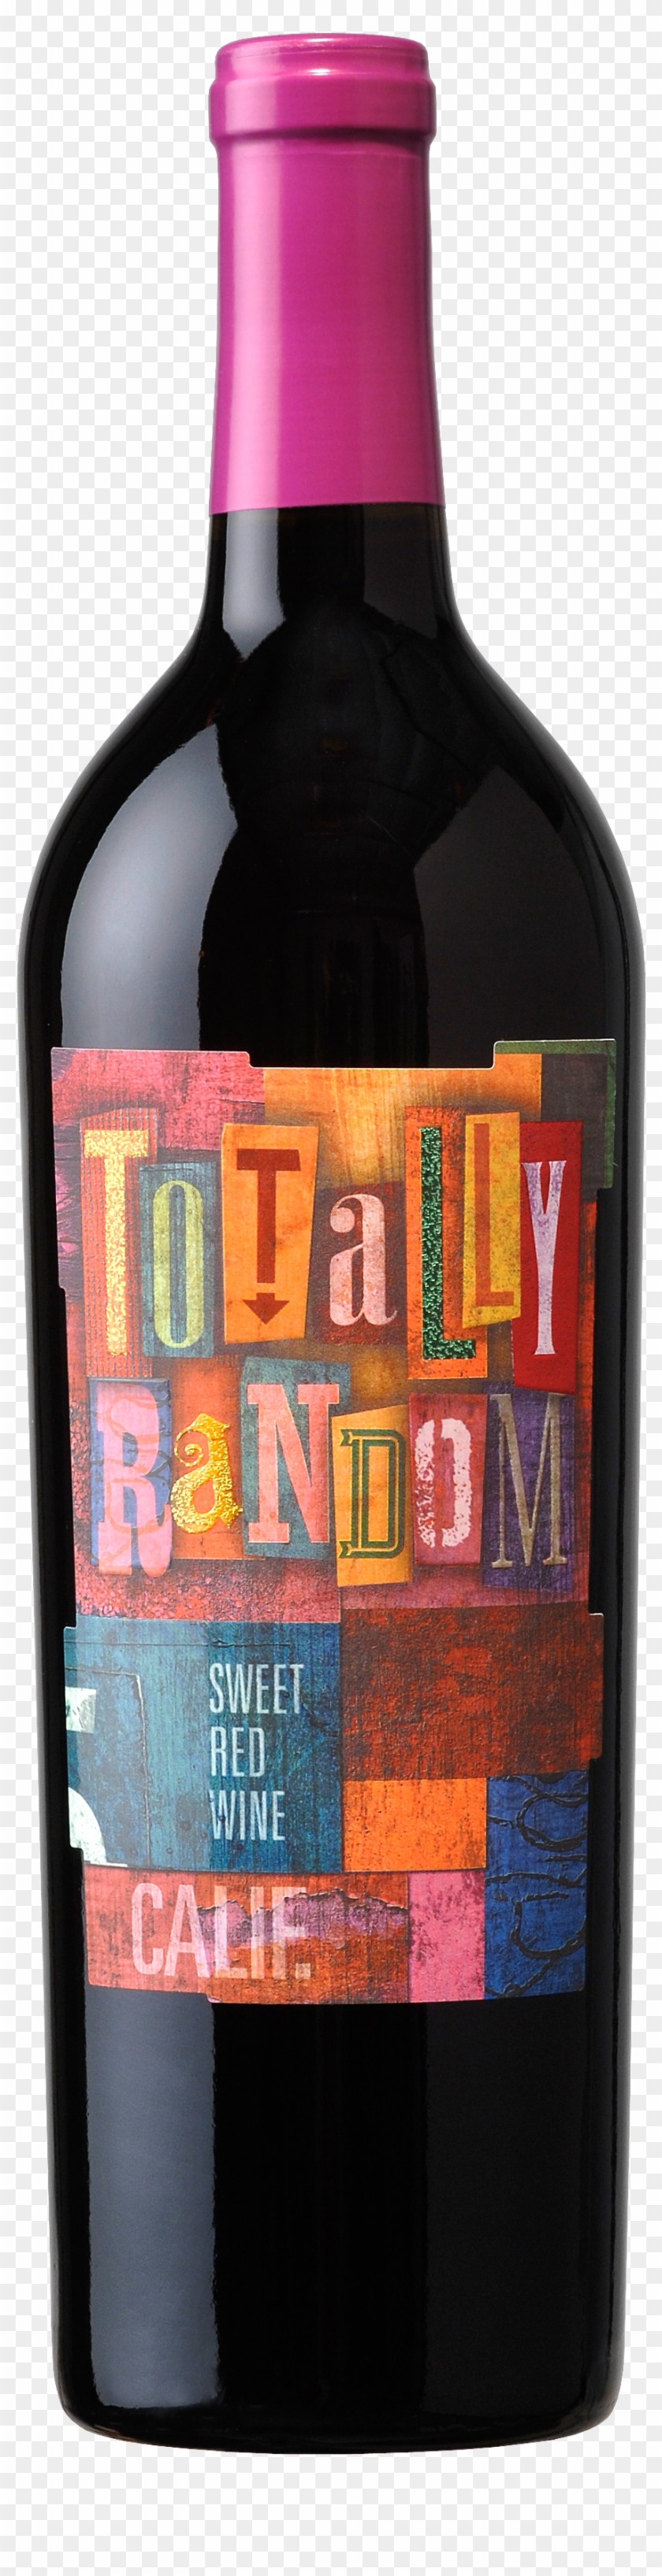 Bottle Png Image, Free Download Image Of Bottle - Random Wine #670469